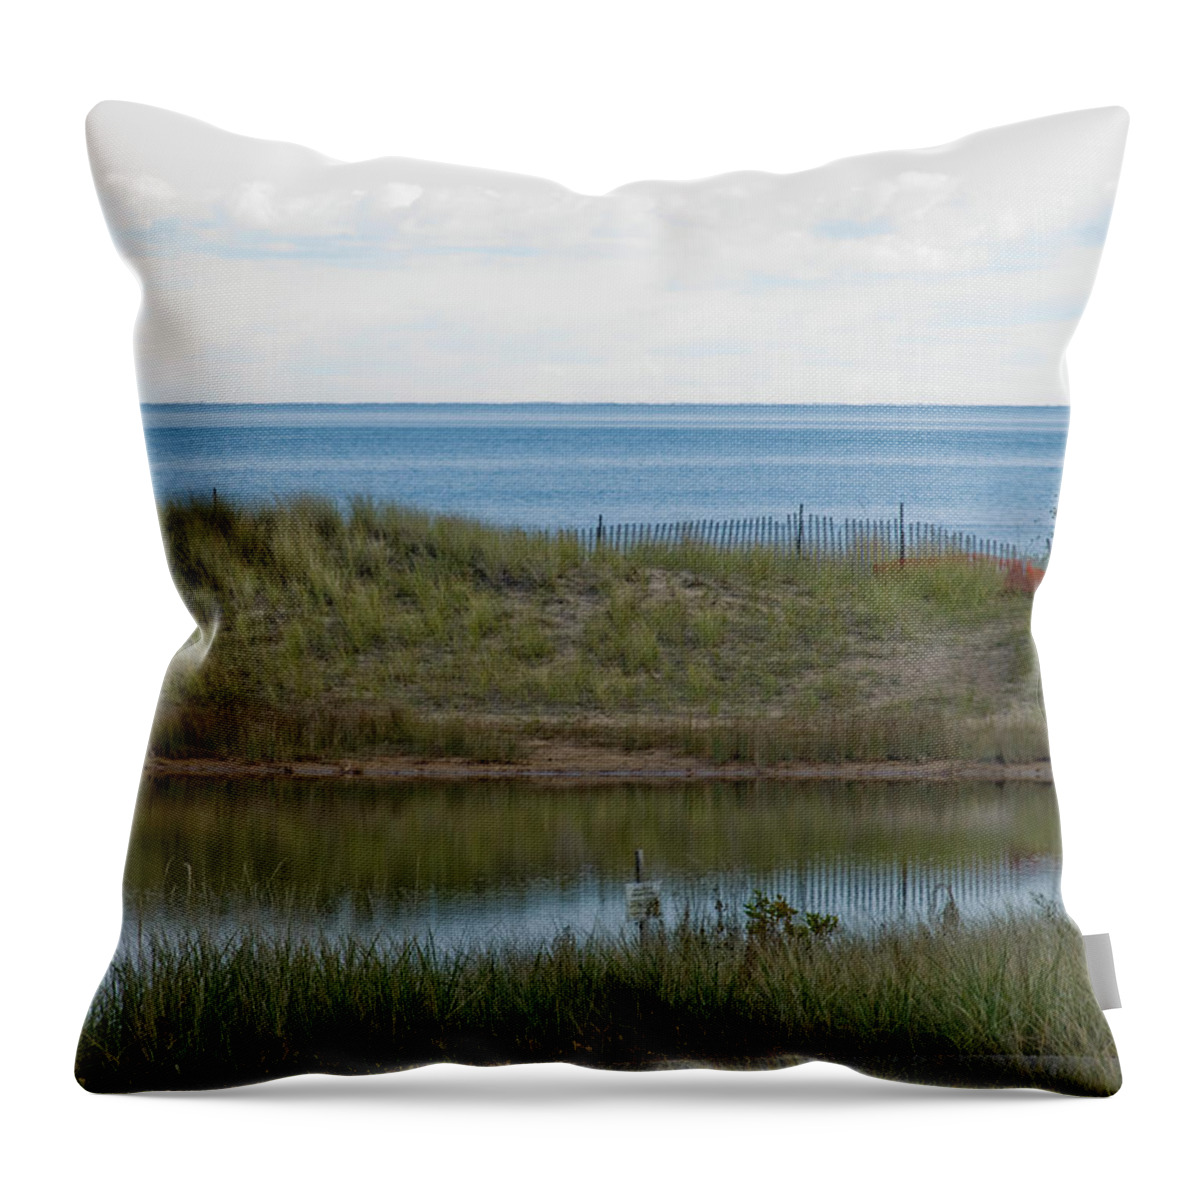 Lake Throw Pillow featuring the photograph Lake Huron by Tara Lynn